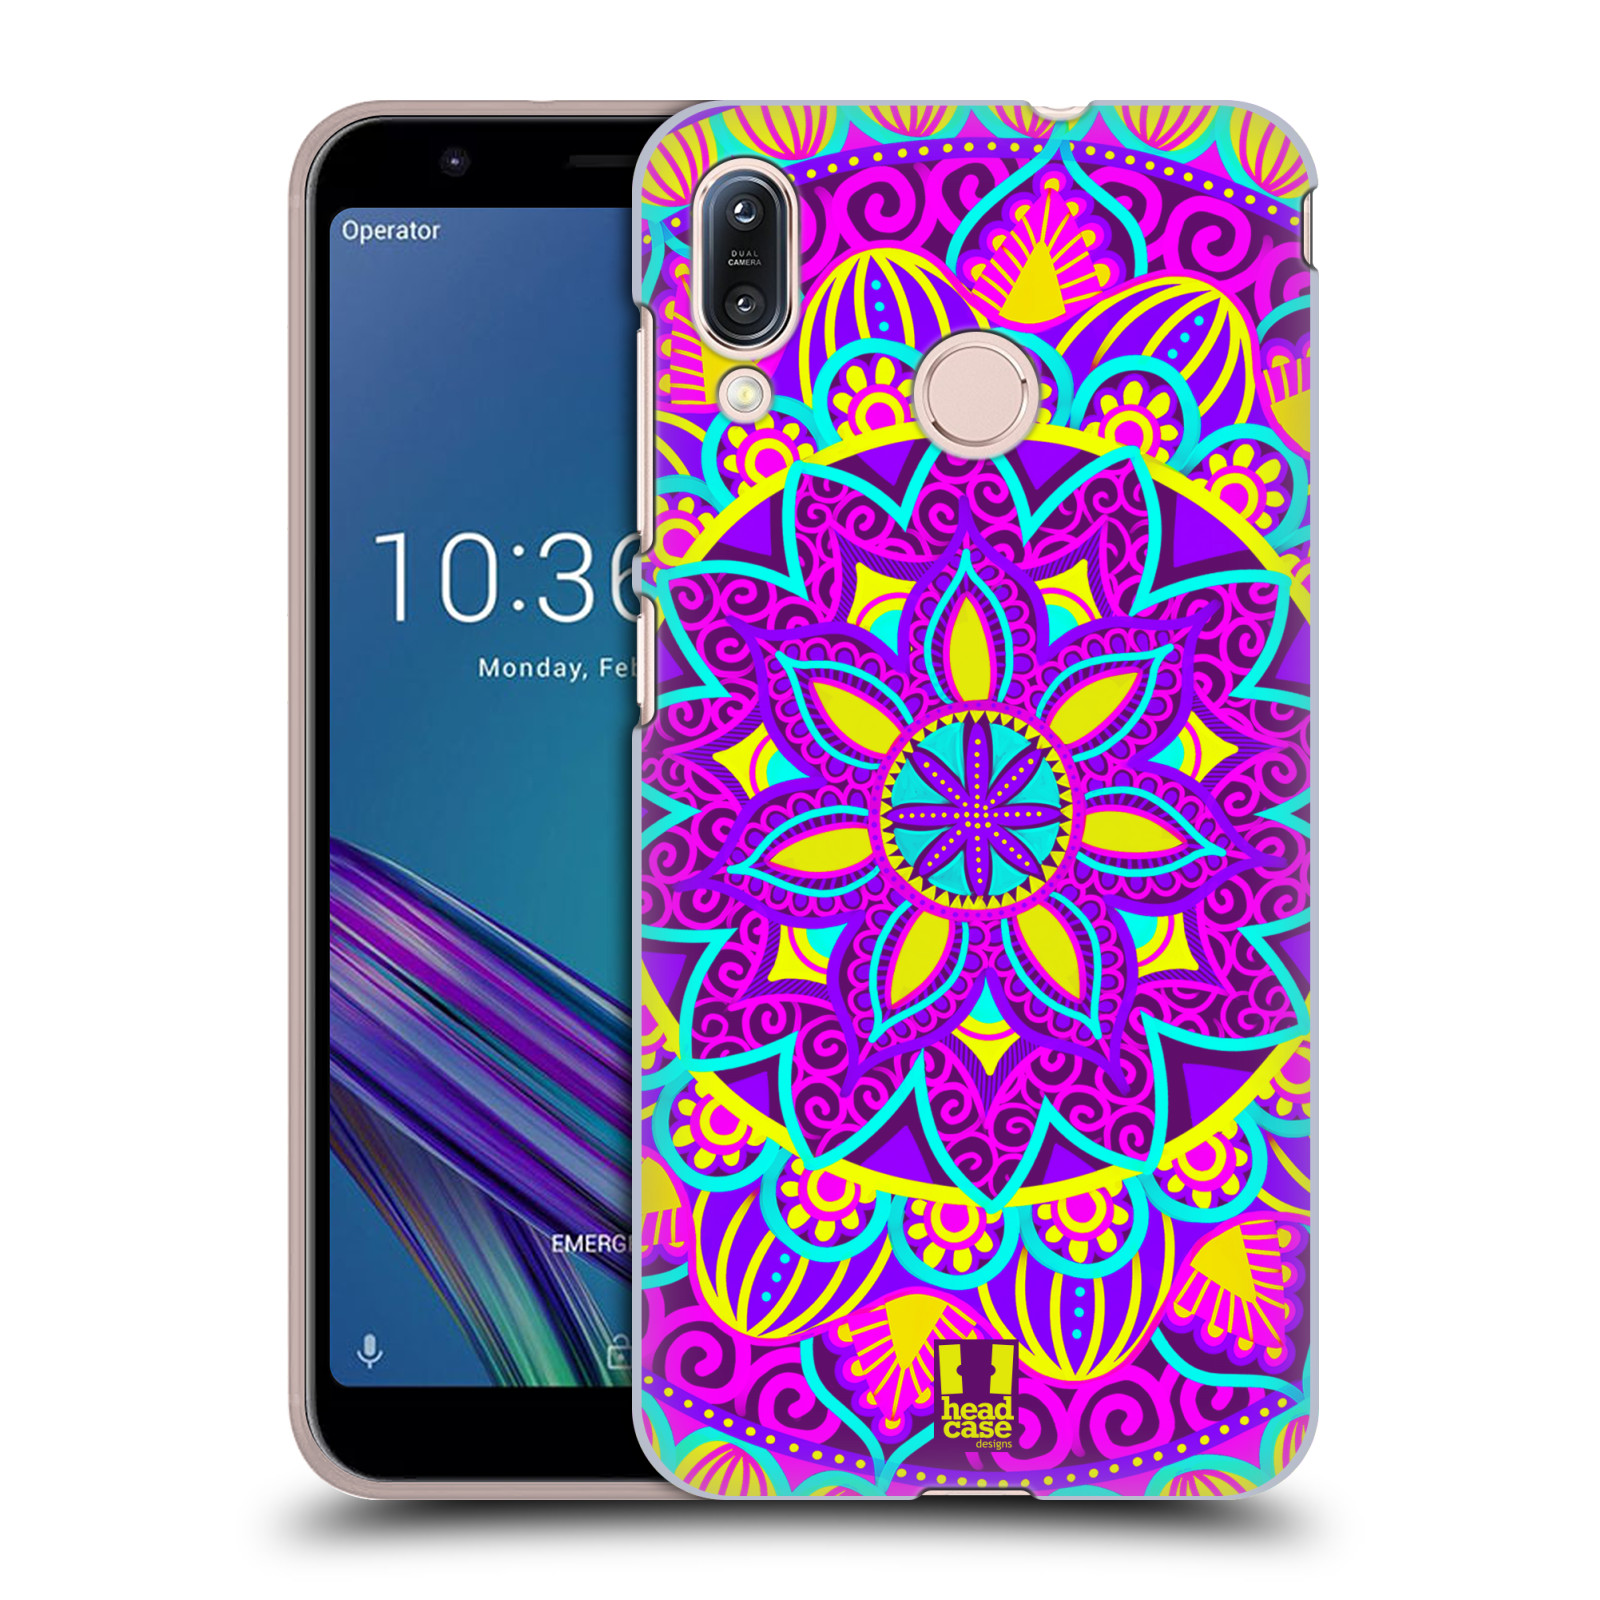 Pouzdro na mobil Asus Zenfone Max M1 (ZB555KL) - HEAD CASE - vzor Indie Mandala květinový motiv FIALOVÁ KVĚTINA